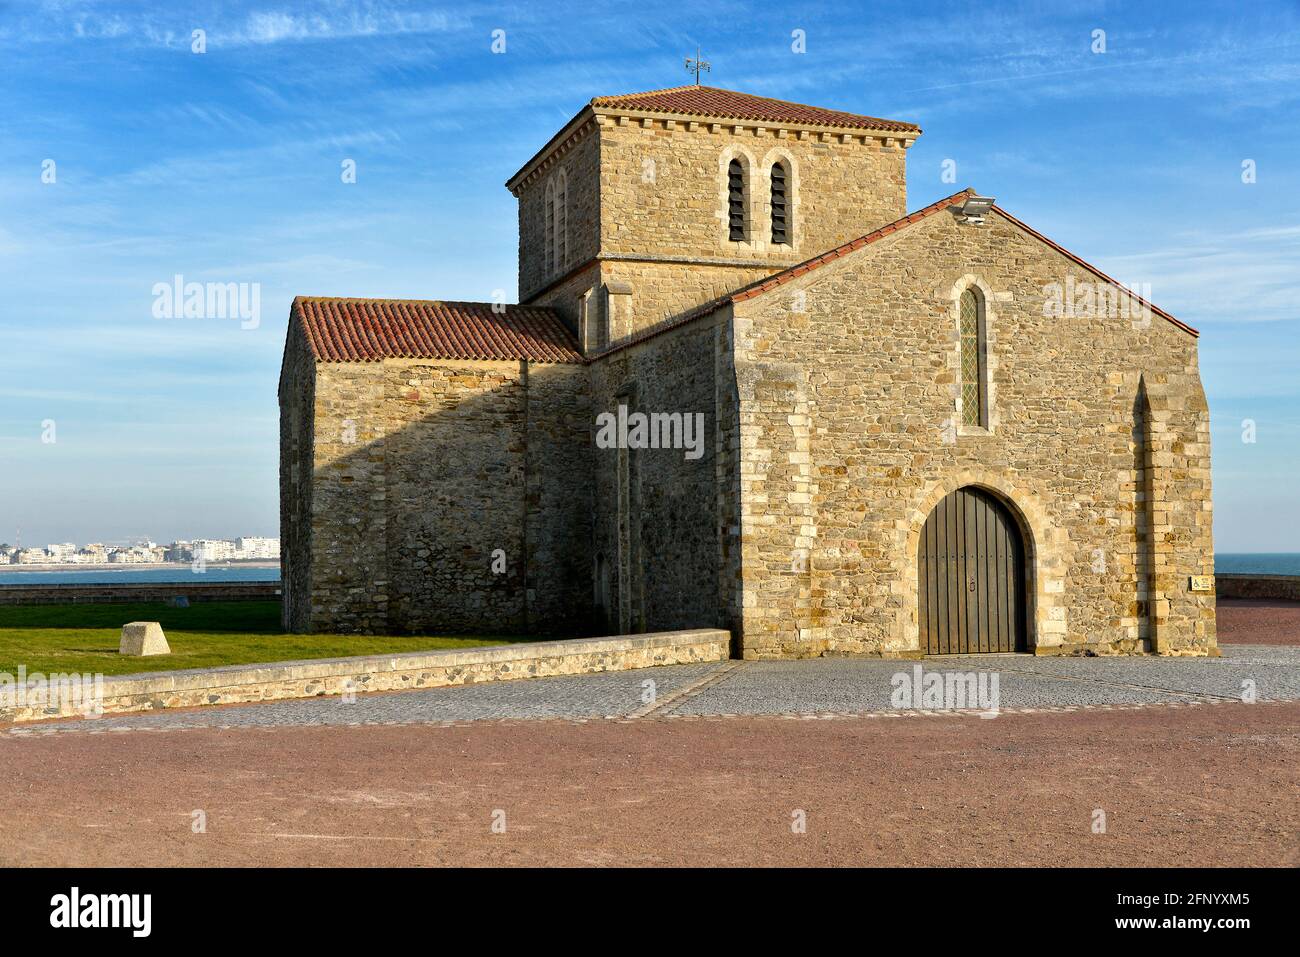 Xi secolo Saint Nicolas priory a Les Sables d'Olonne, comune nel dipartimento della Vandea nella regione Pays de la Loire in Francia occidentale Foto Stock